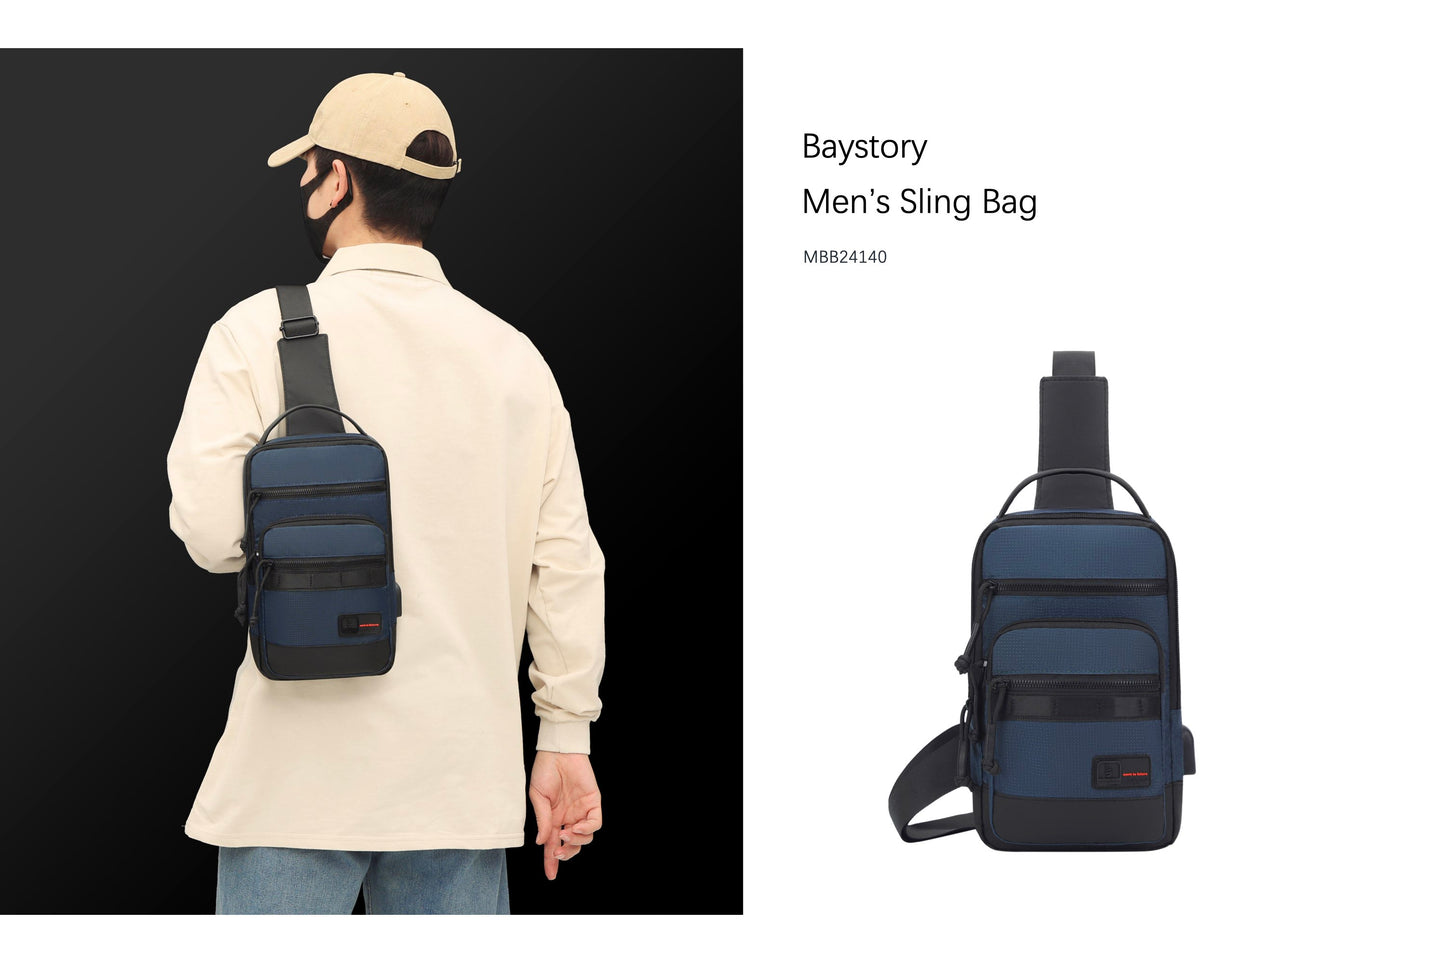 Baystory Men’s Sling Bag MBB24140 - Baystory